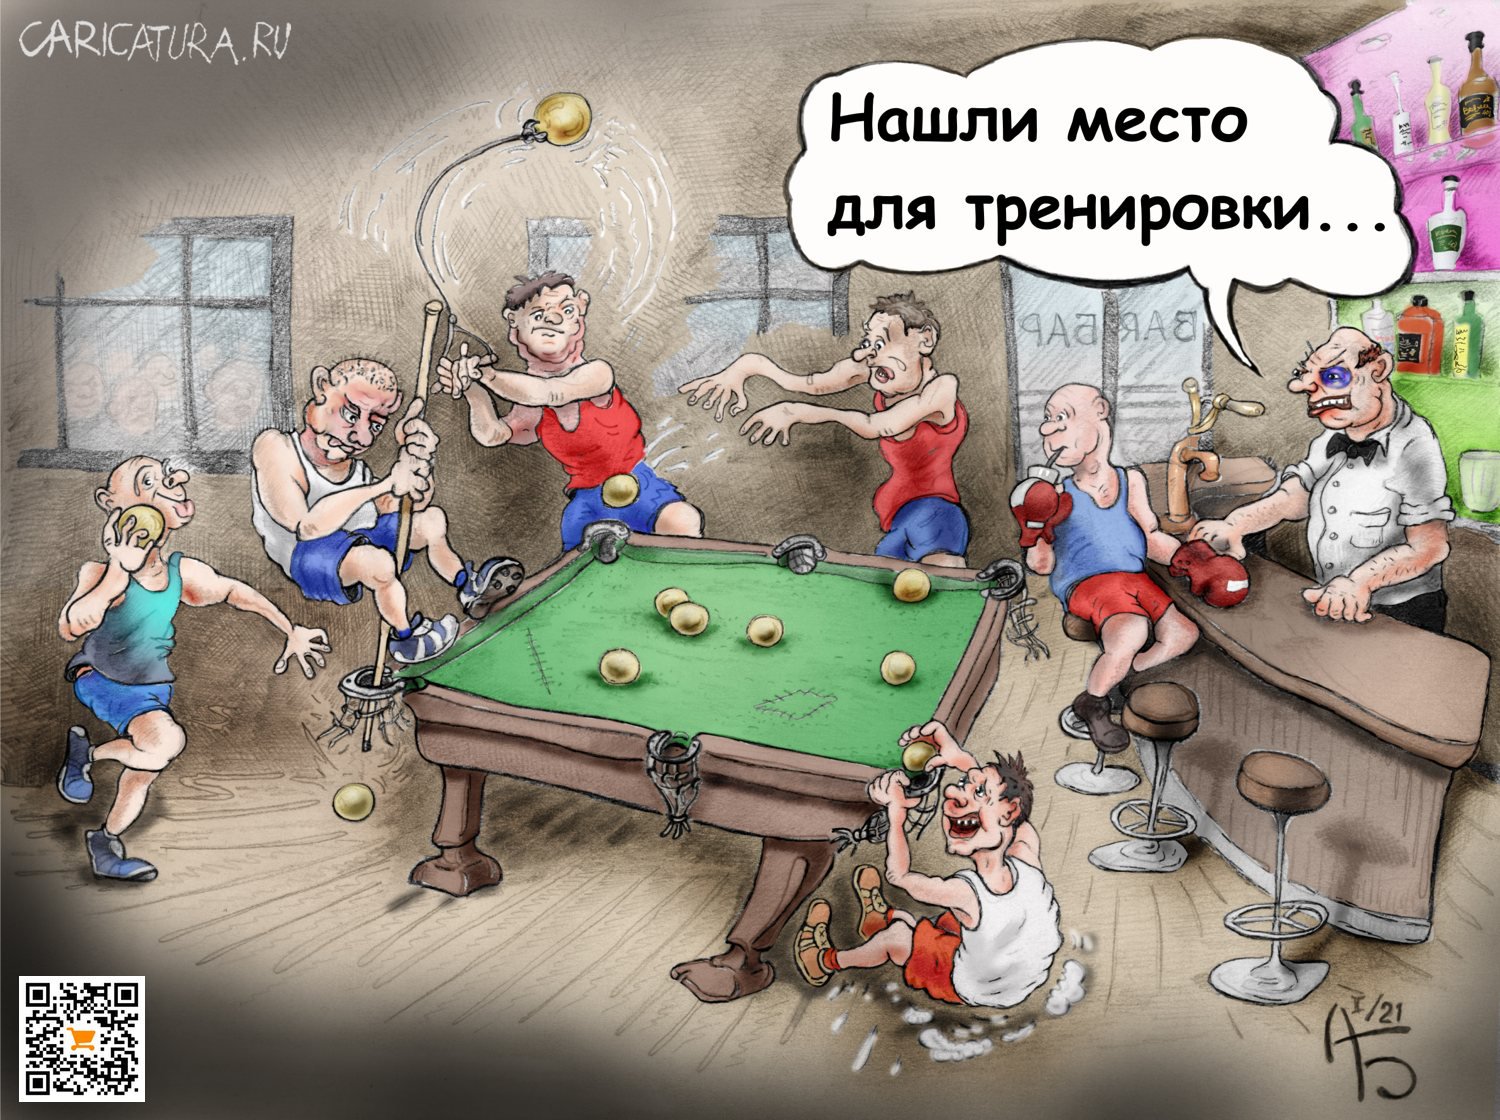 Карикатура "Олимпийские игры", Александр Богданов